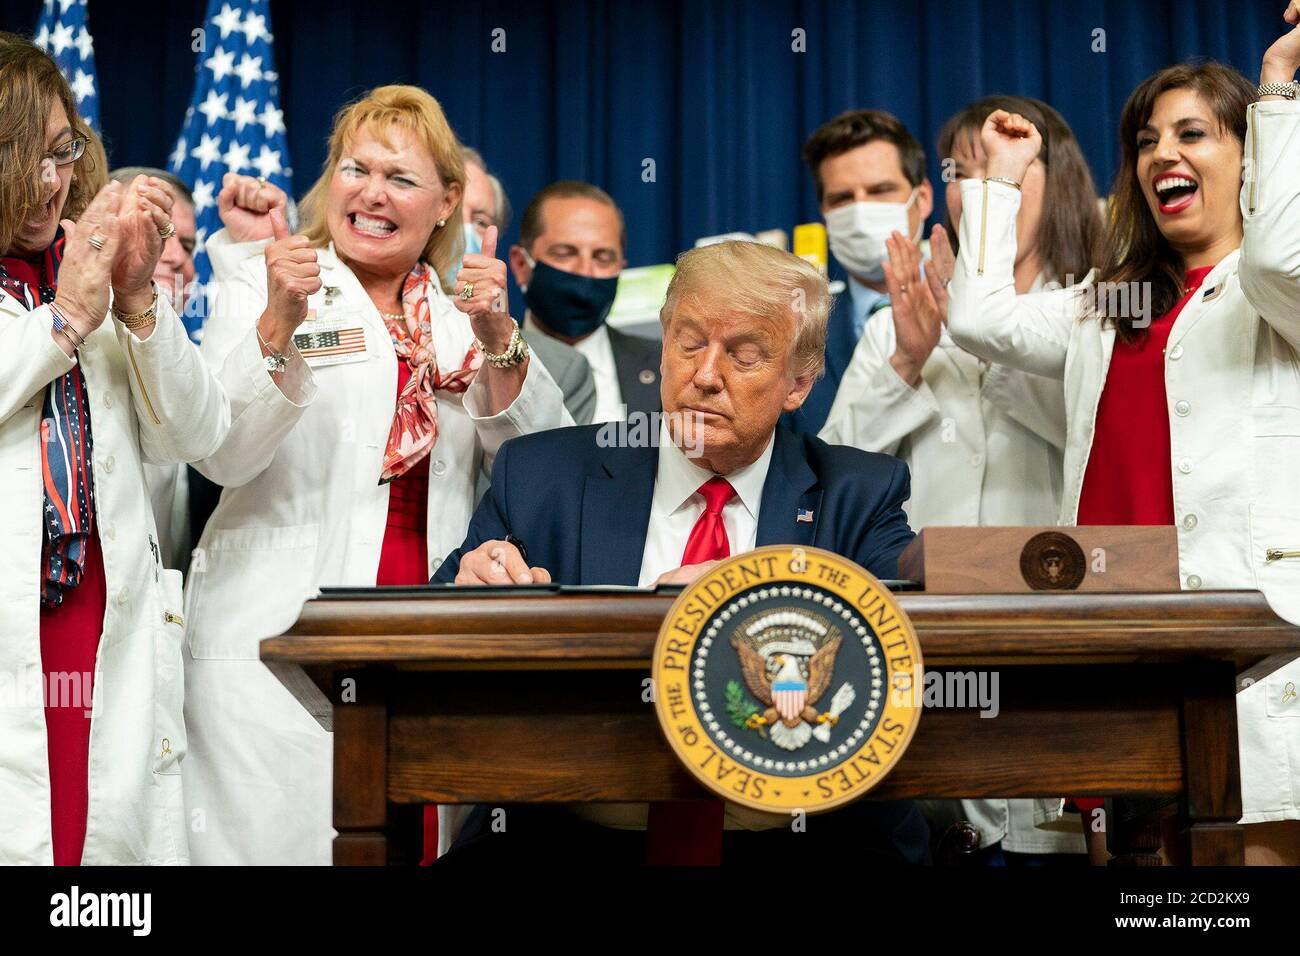 Il presidente Donald J. Trump è applaudito alla firma di una serie di ordini esecutivi sulla riduzione dei prezzi dei farmaci venerdì 24 luglio 2020, presso il South Court Auditorium dell'Eisenhower Executive Office Building presso la Casa Bianca. Foto Stock